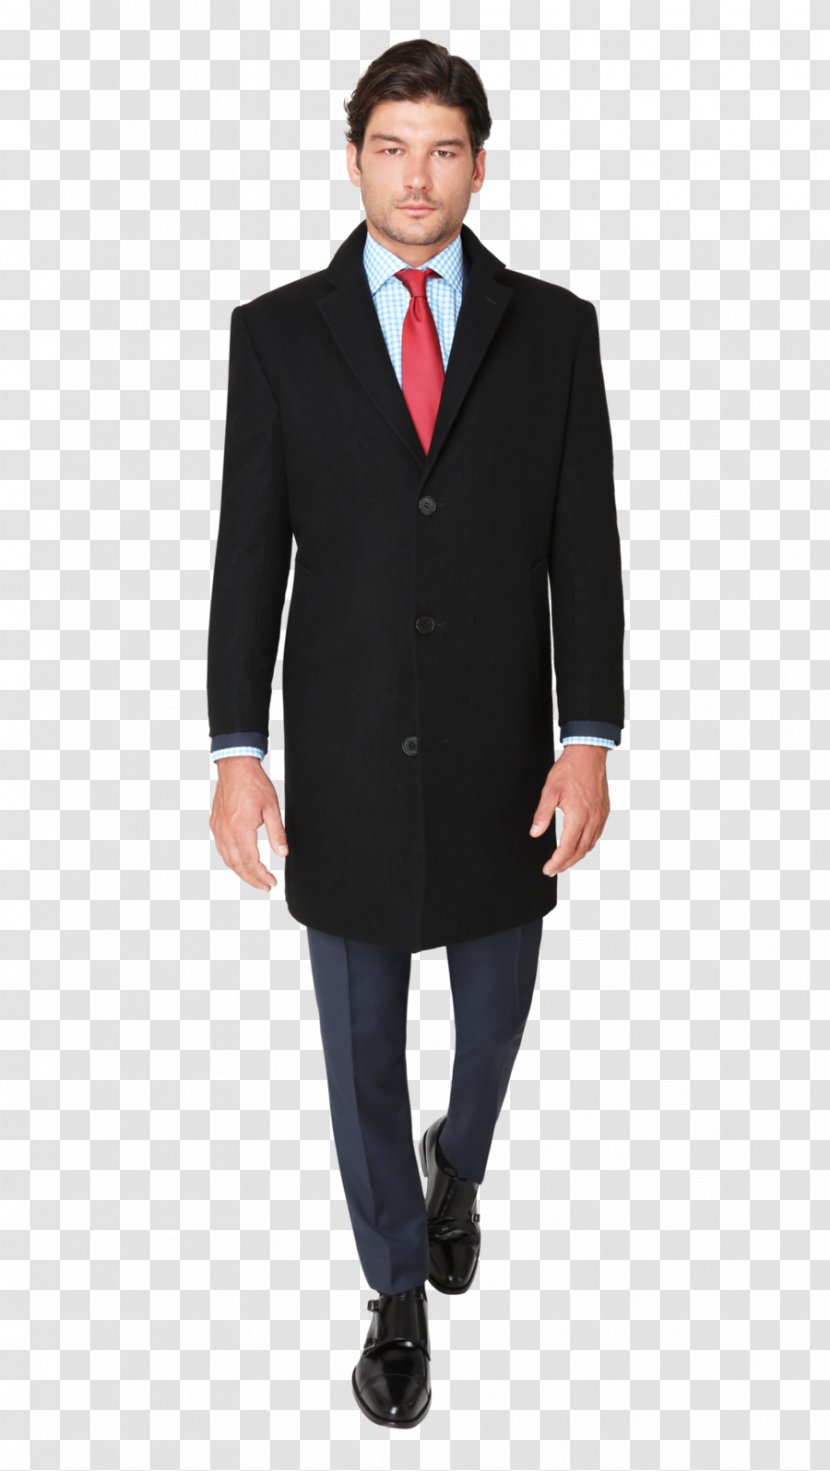 Suit Tuxedo Black Tie Clothing Jacket - Businessperson Transparent PNG